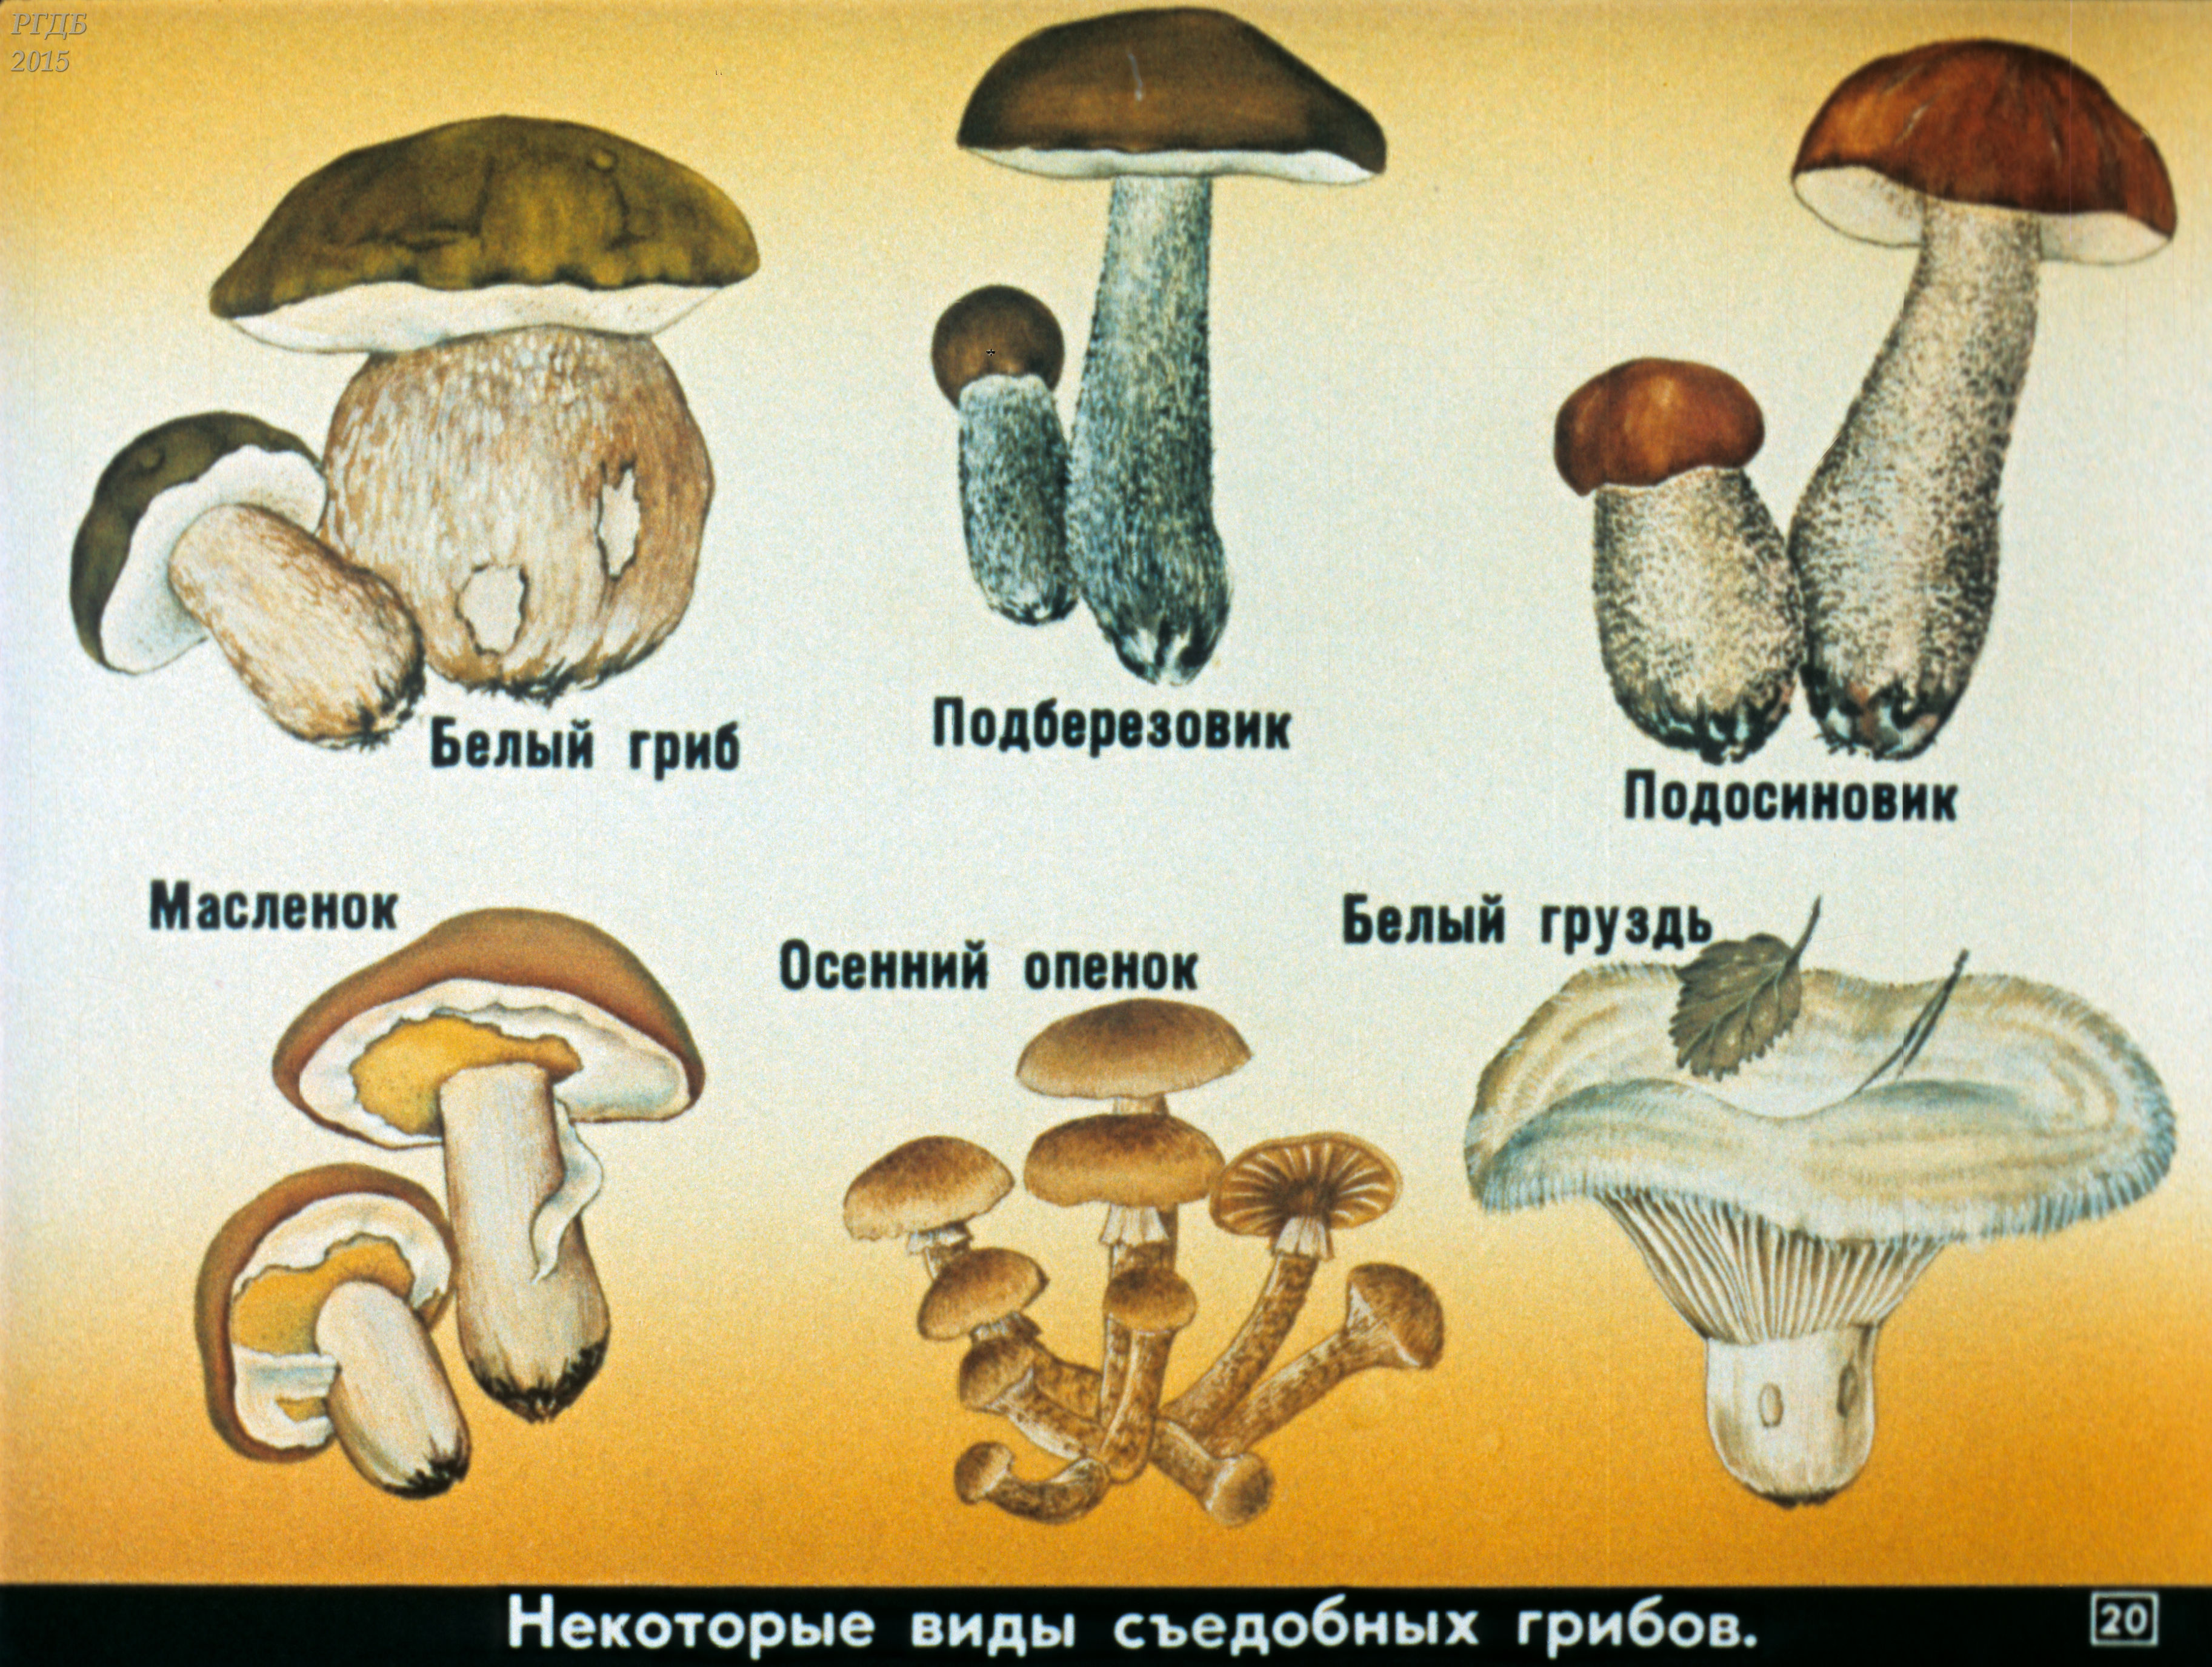 Название съедобных грибов